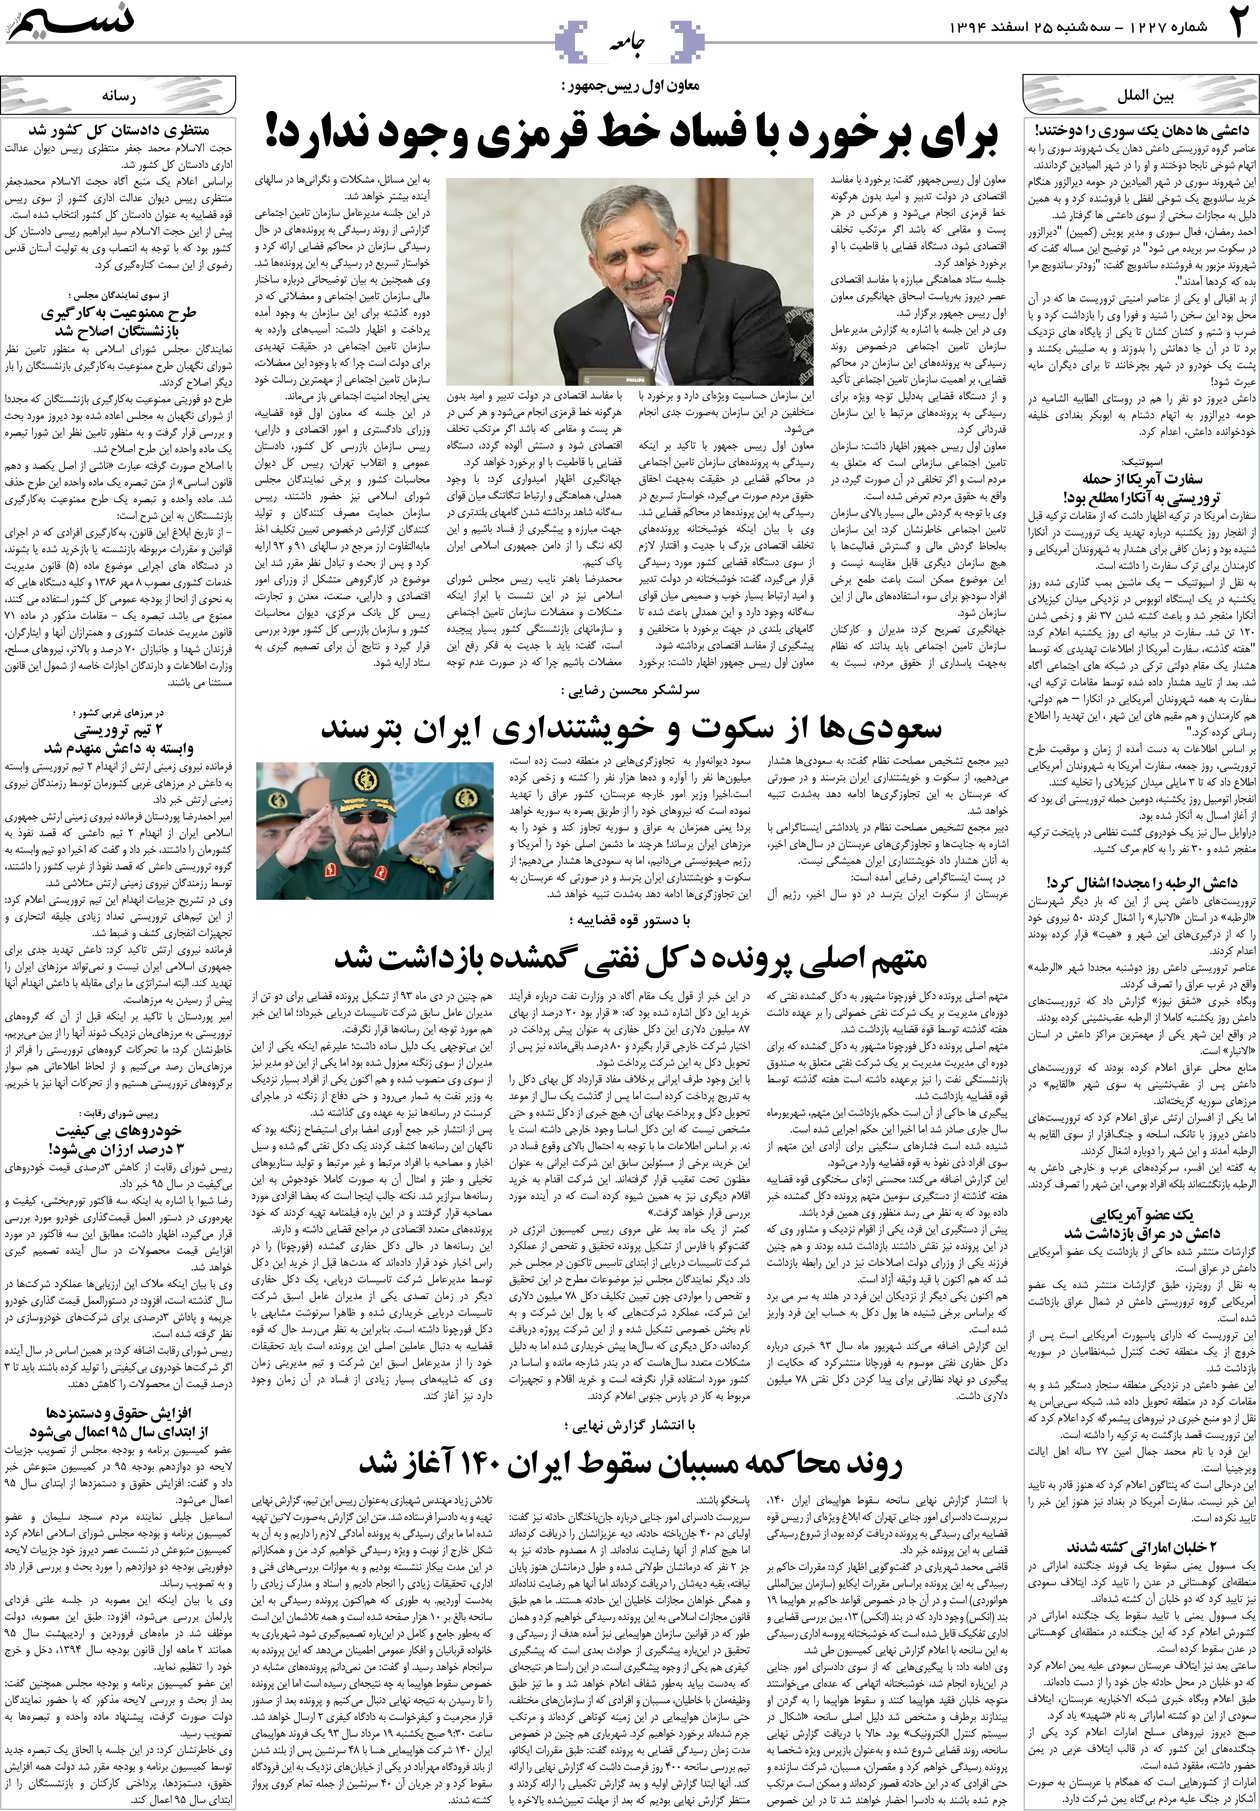 صفحه جامعه روزنامه نسیم شماره 1227